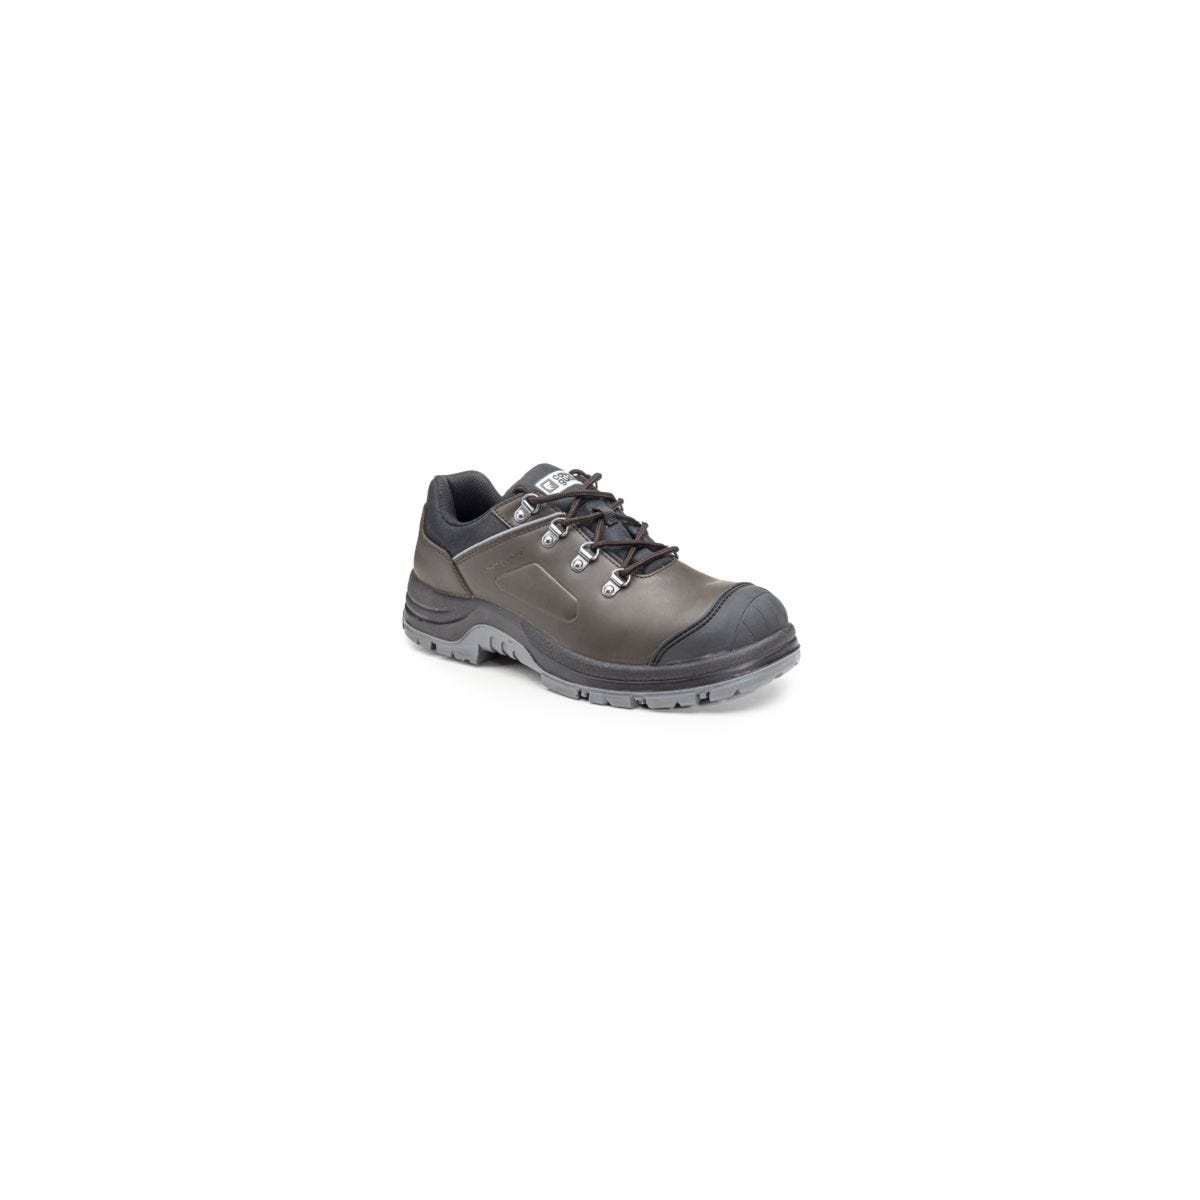 Chaussures de sécurité S3 FLINT Basse Croute de cuir Marron - COVERGUARD - Taille 40 0